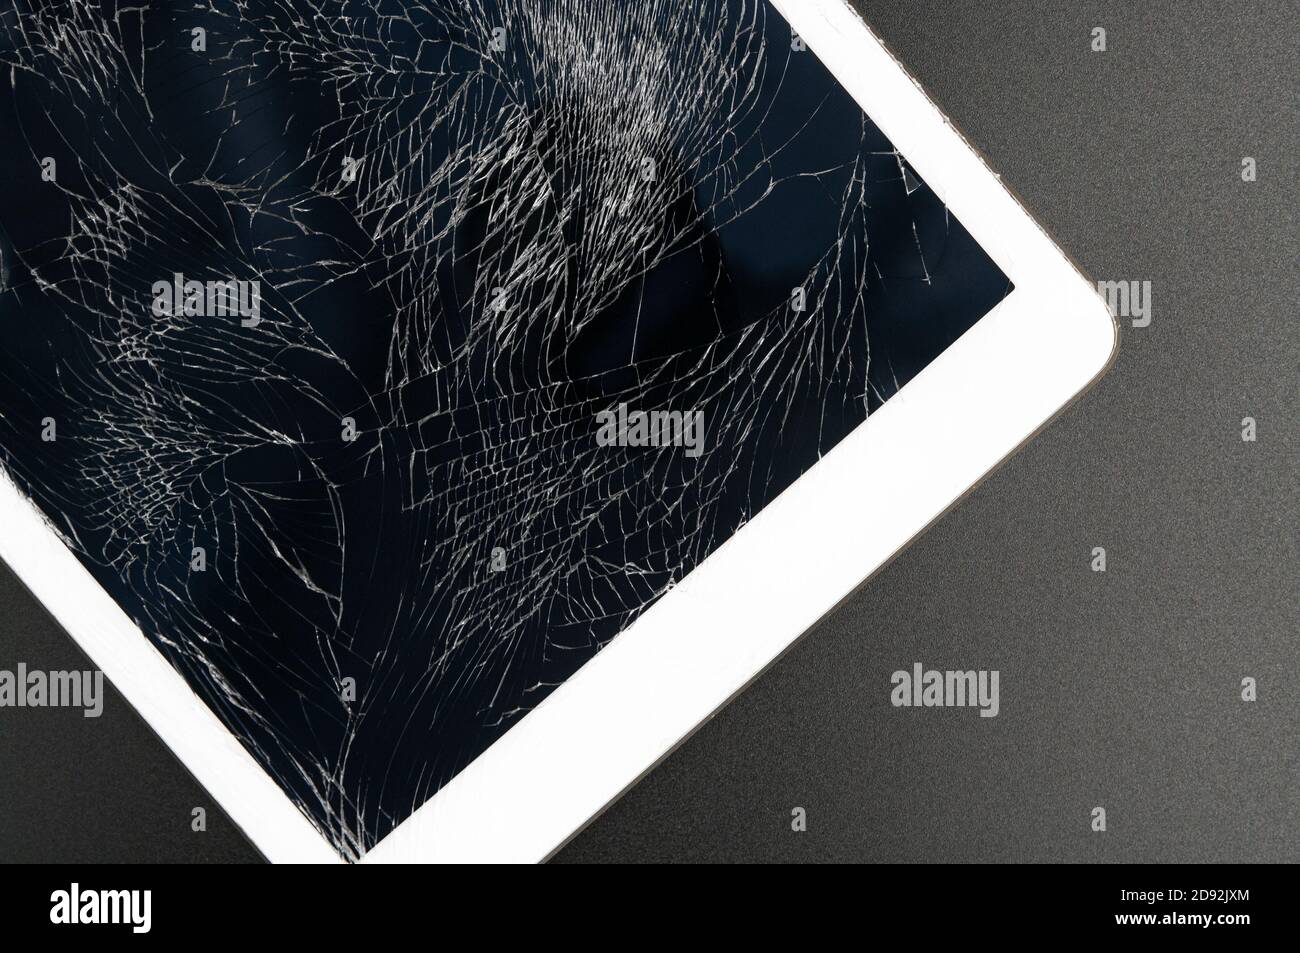 Schermo del tablet rotto immagini e fotografie stock ad alta risoluzione -  Alamy